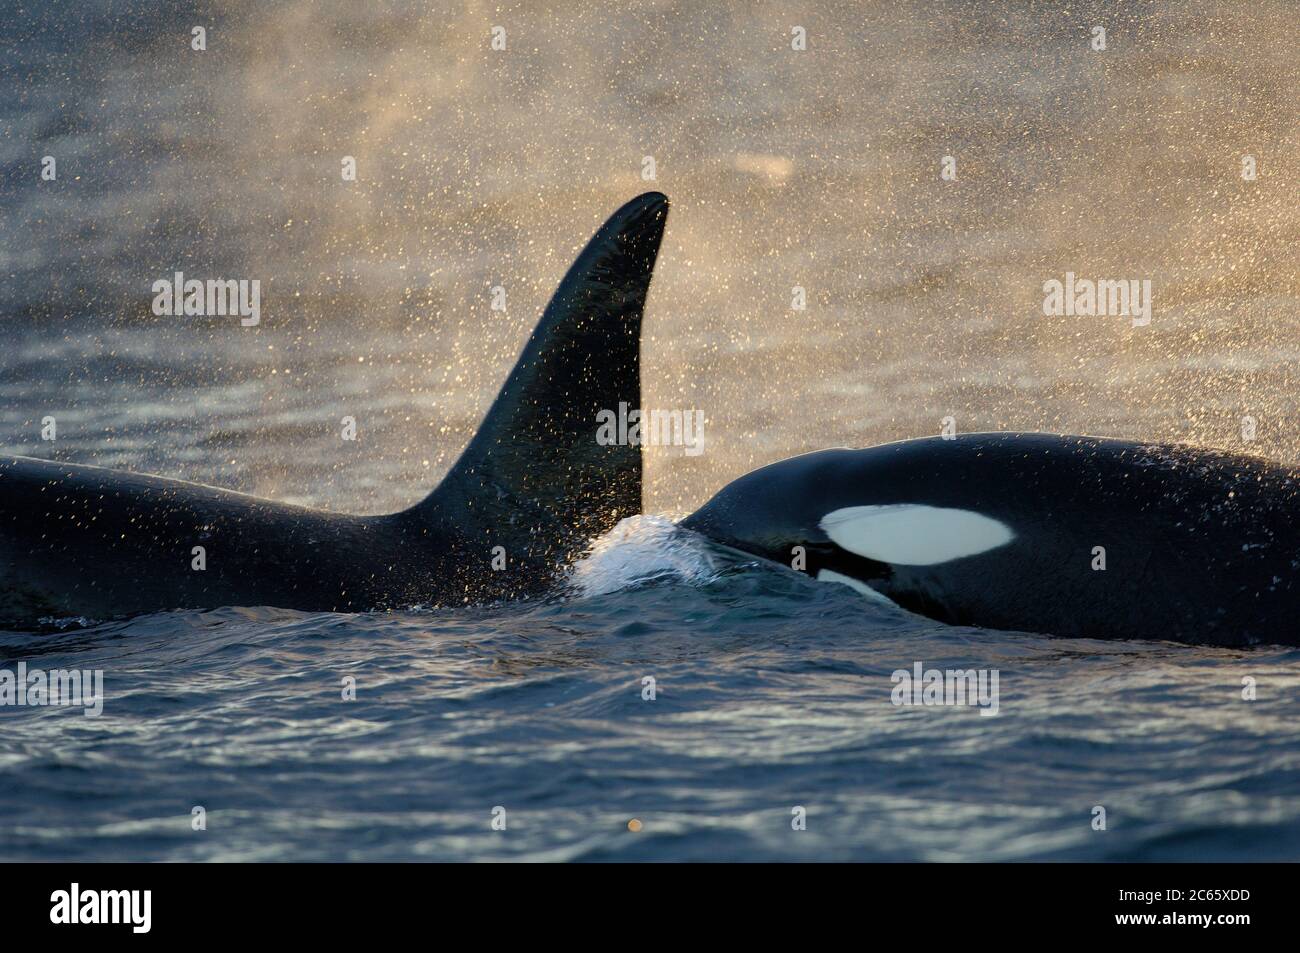 Orca ou Baleine noire (Orcinus orca) se nourrissant de hareng dans la région de Tysfjord (Norvège). Les orques mâles atteignent 7 m, tandis que les femelles mesurent 5 m de longueur, Banque D'Images